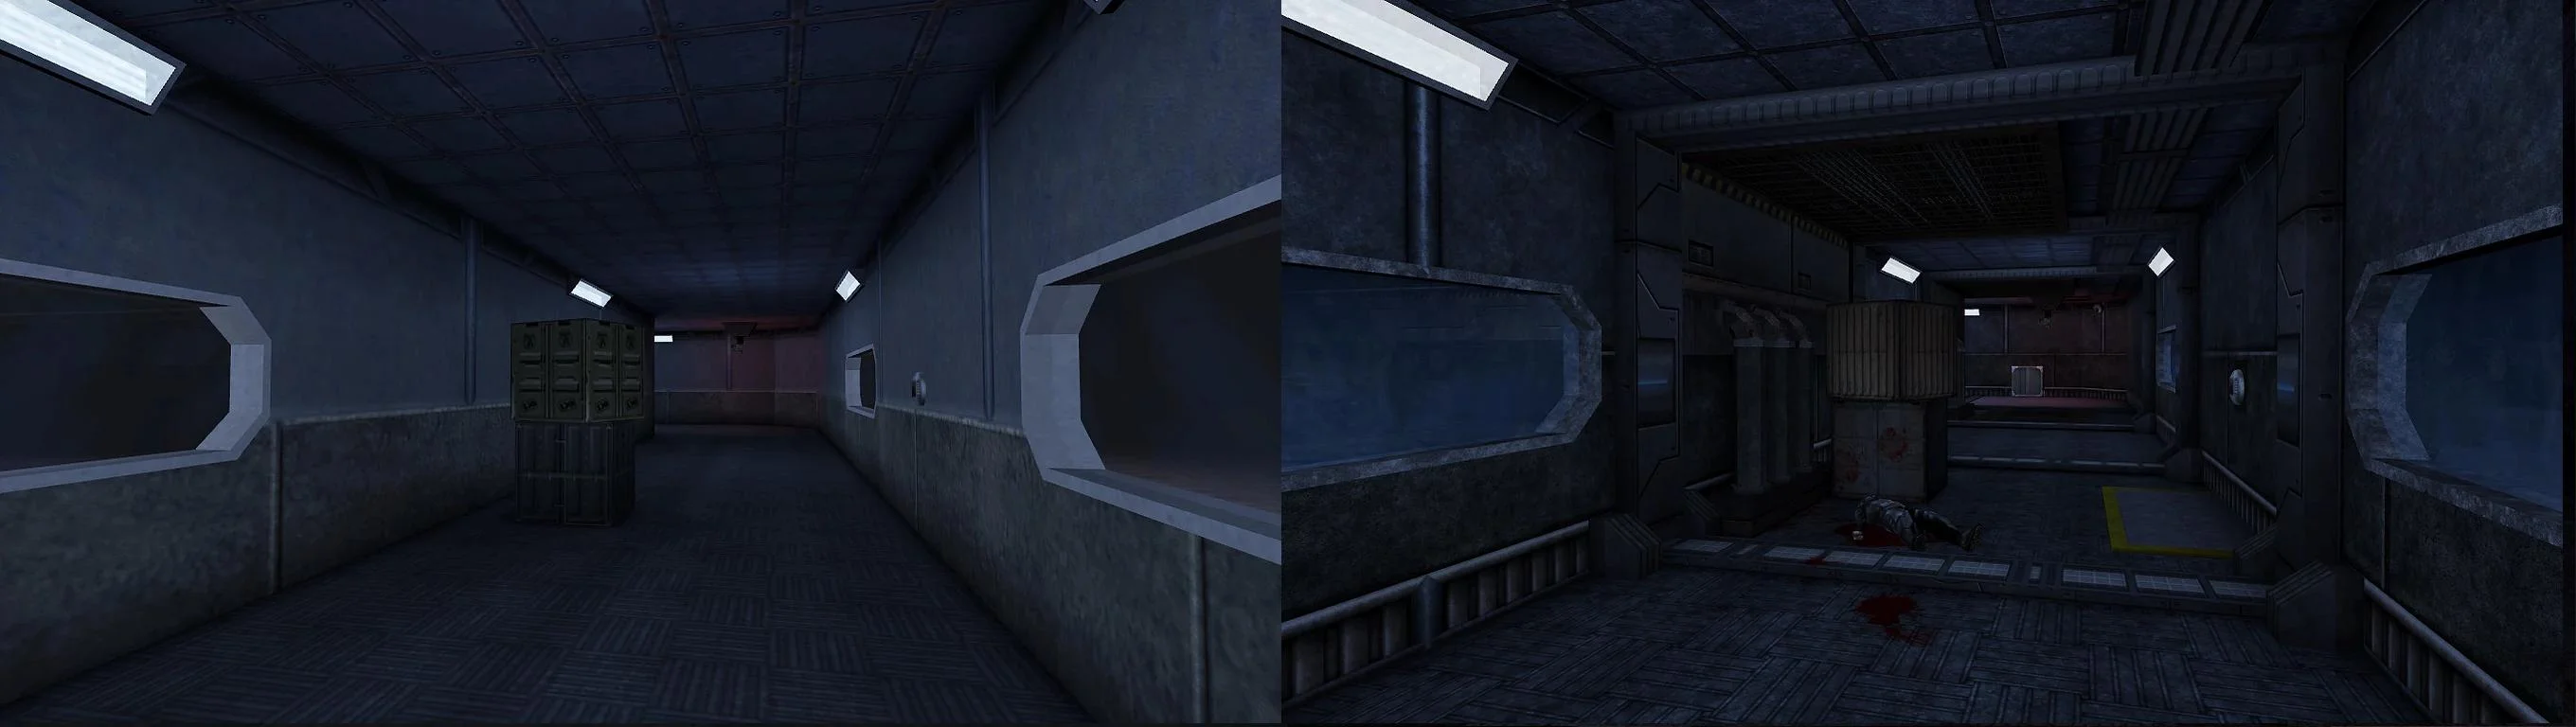 Фанаты исправят недостатки оригинальной Deus Ex 17 лет спустя - фото 3